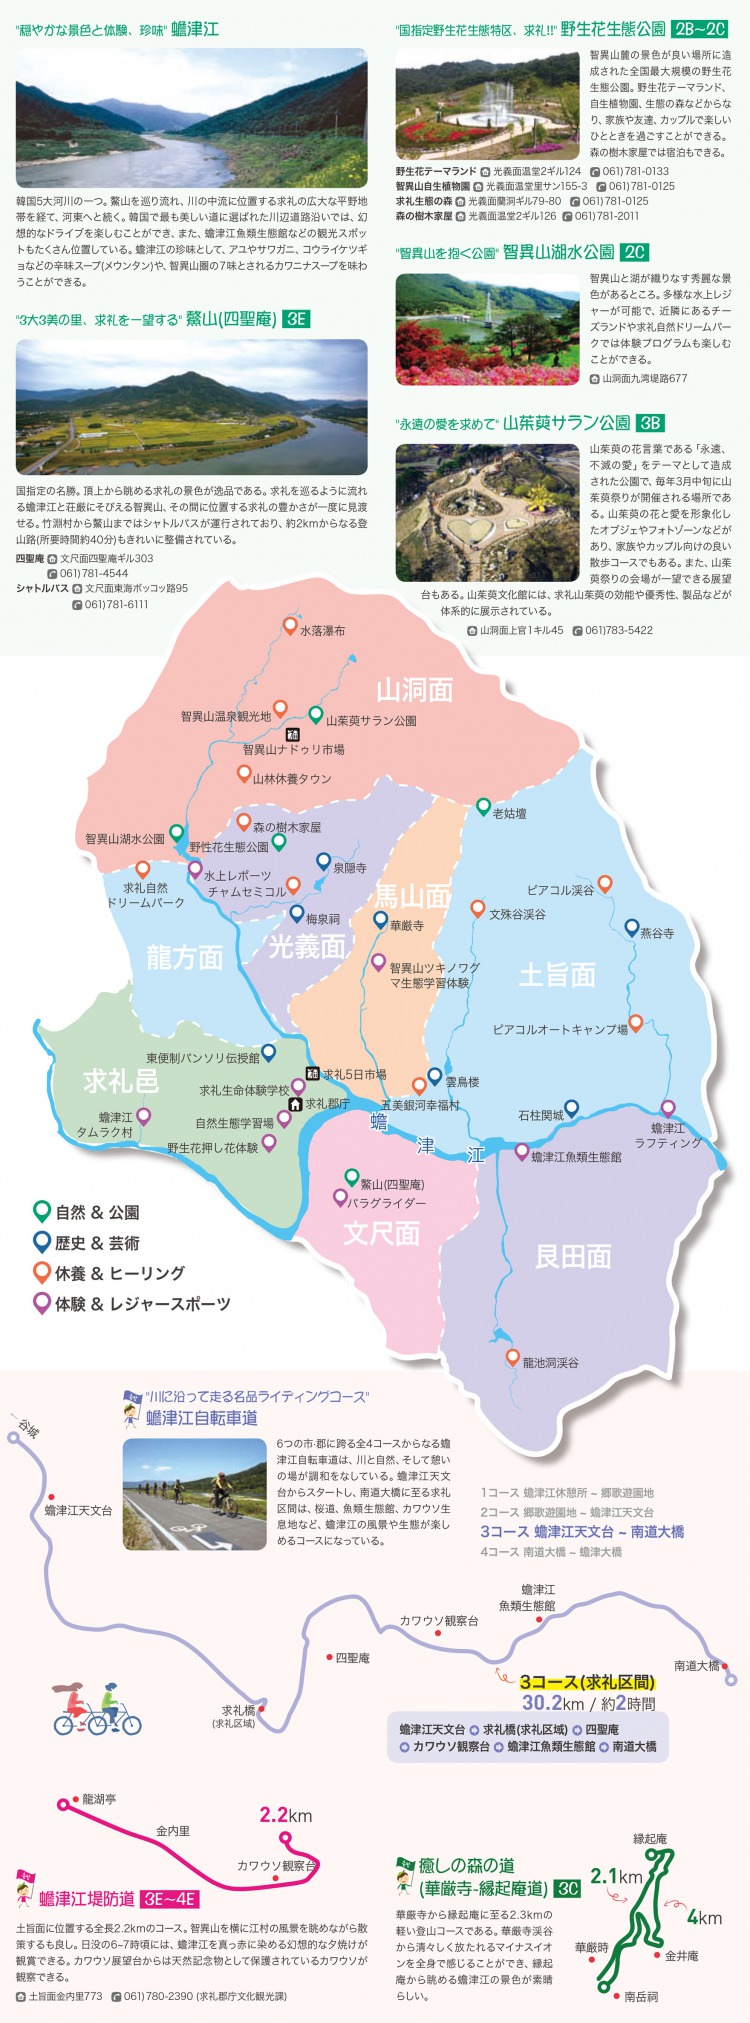 求礼日本語地図